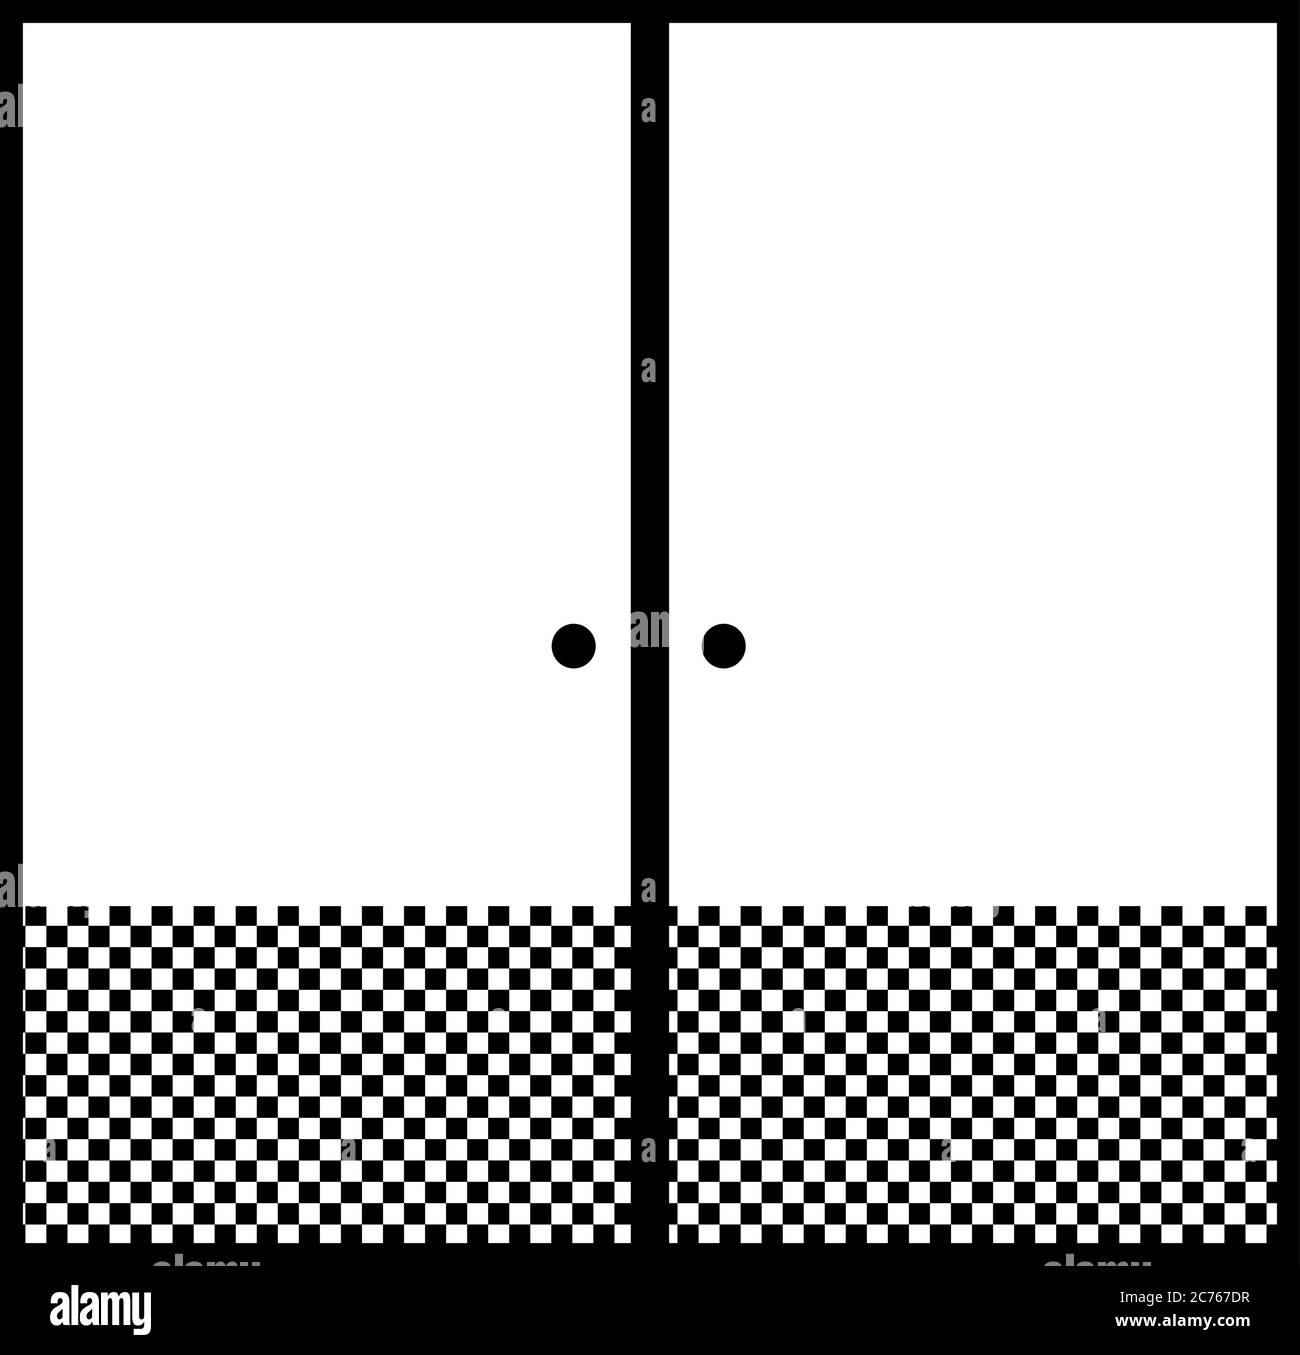 Voici une illustration de la magnifique porte coulissante japonaise monochrome Illustration de Vecteur